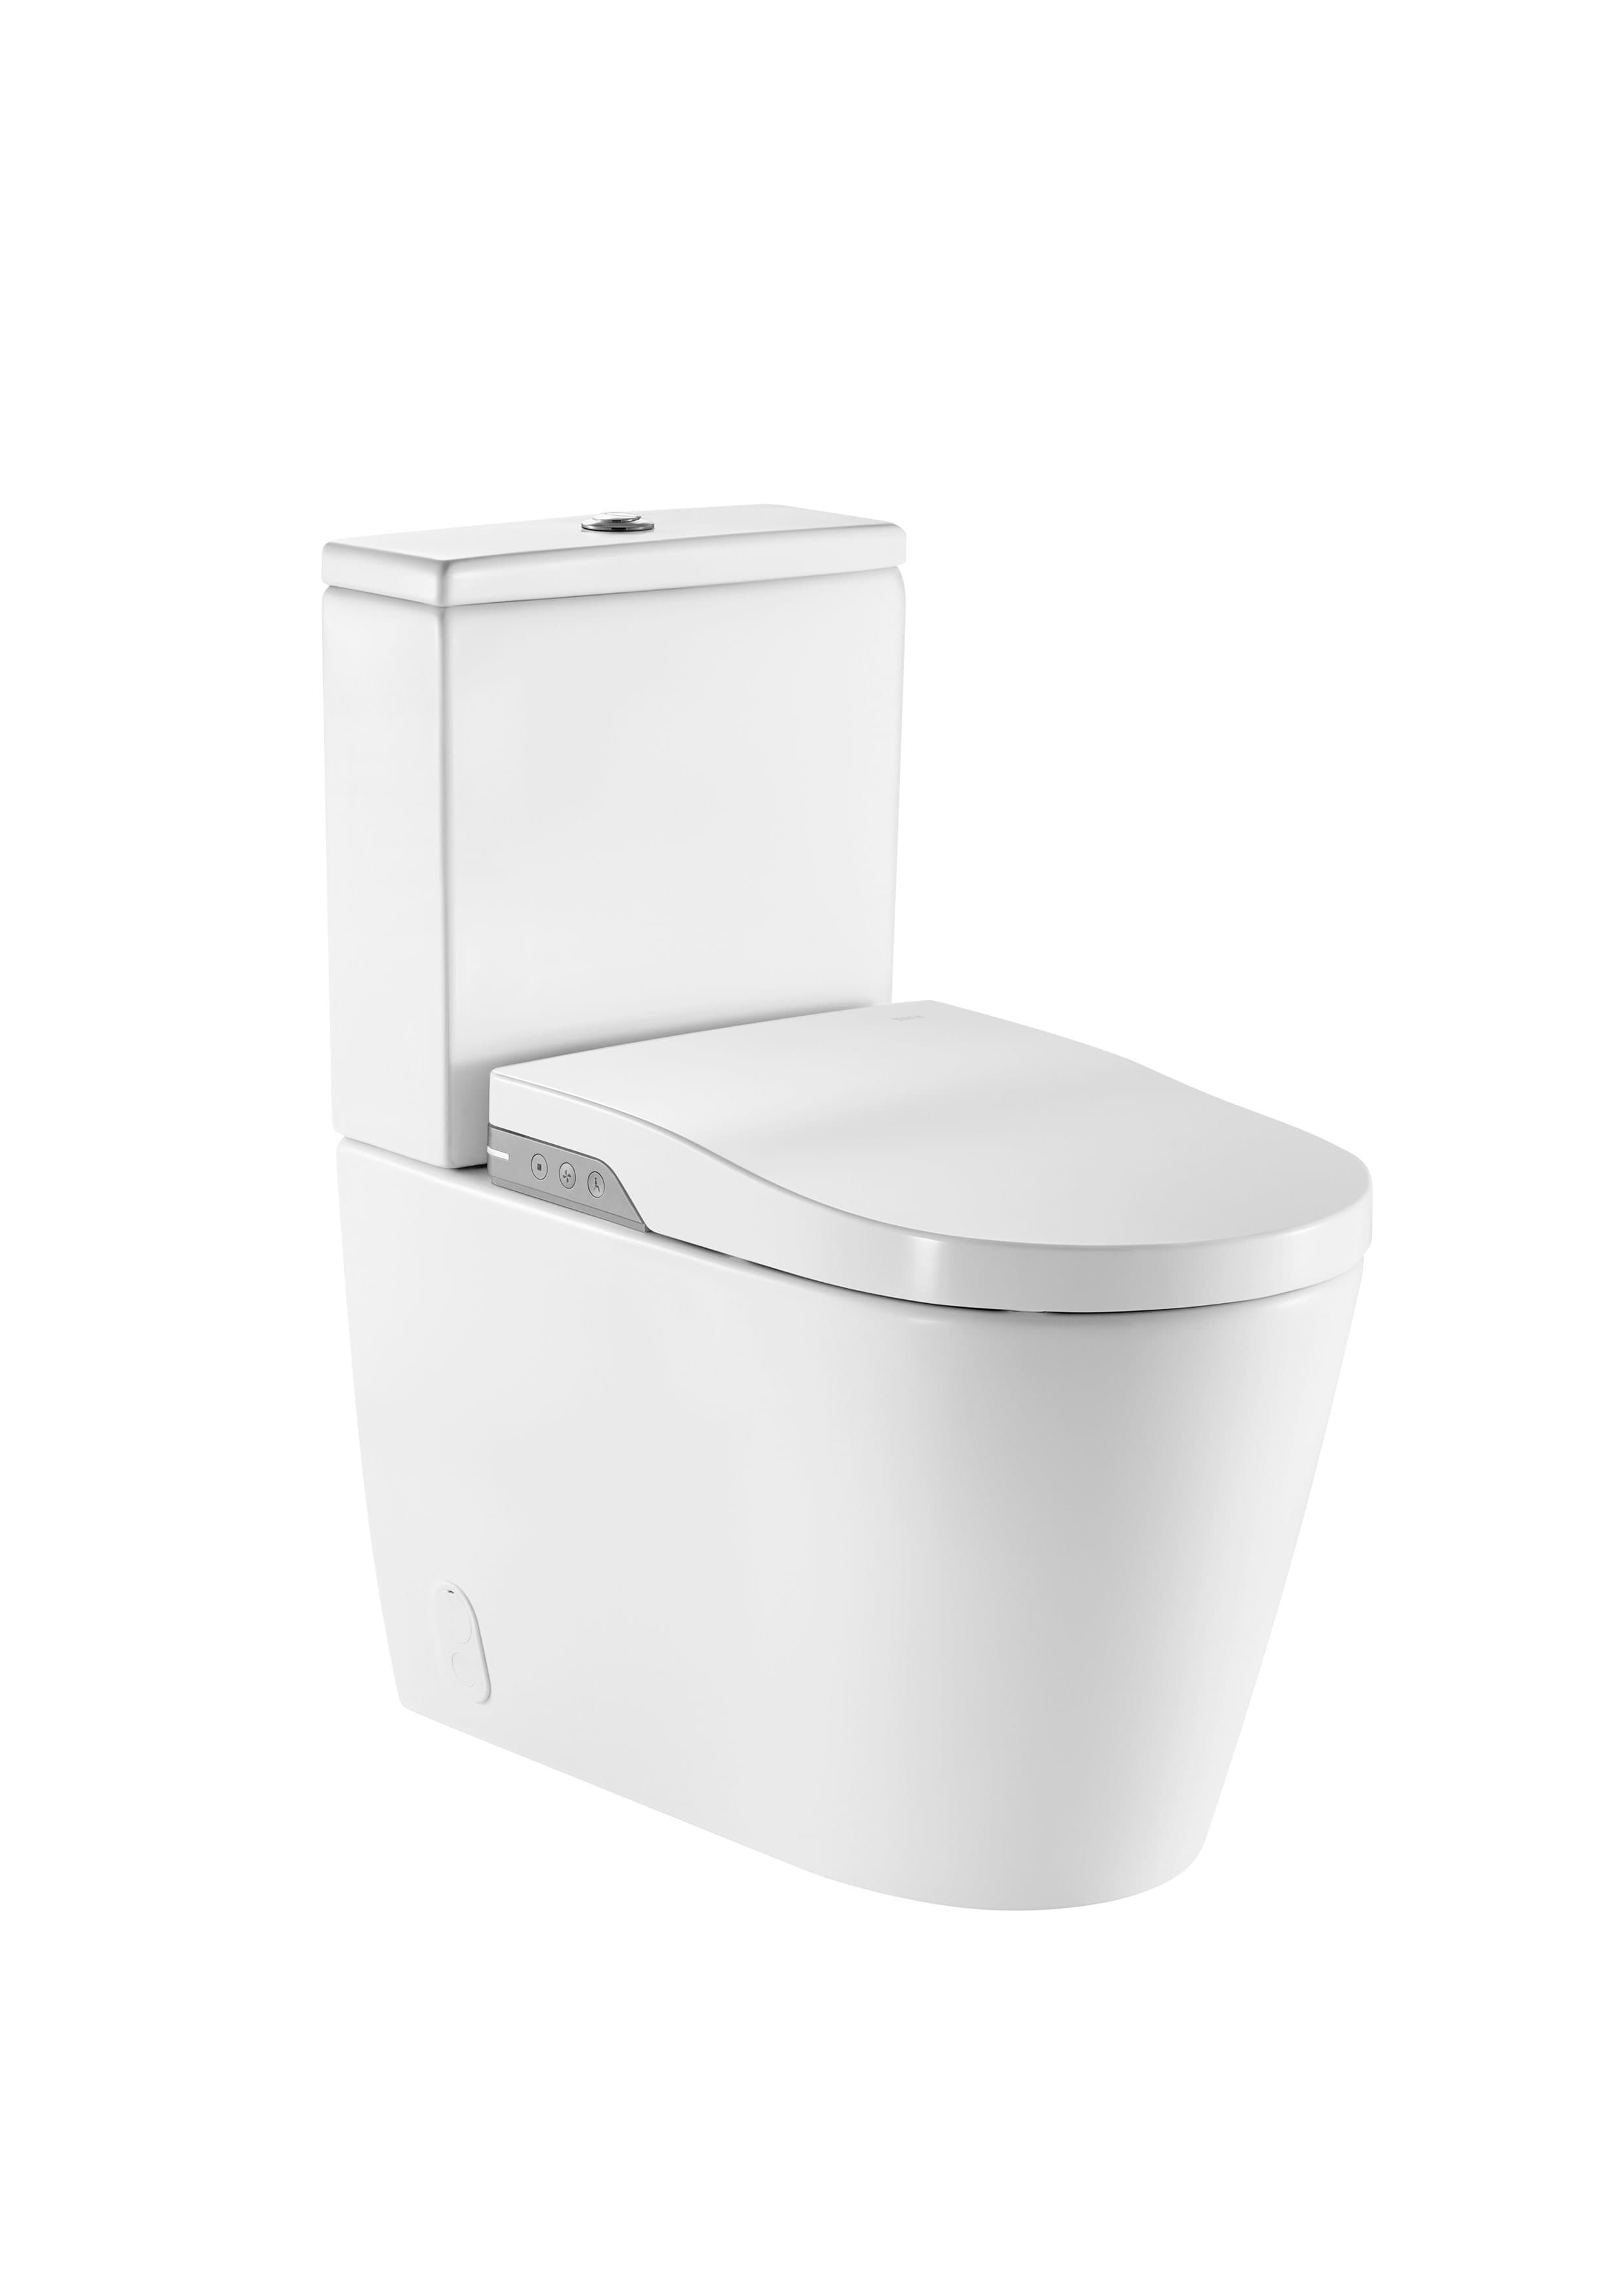 Sanitaire WC INSPIRA A80306L001 In-Wash - WC lavant au sol Rimless à évacuation duale adossé au mur. Inclus cuvette, réservoir, siège et abattant. Nécessite une alimentation électrique. Roca 1 - Mirage ceramica